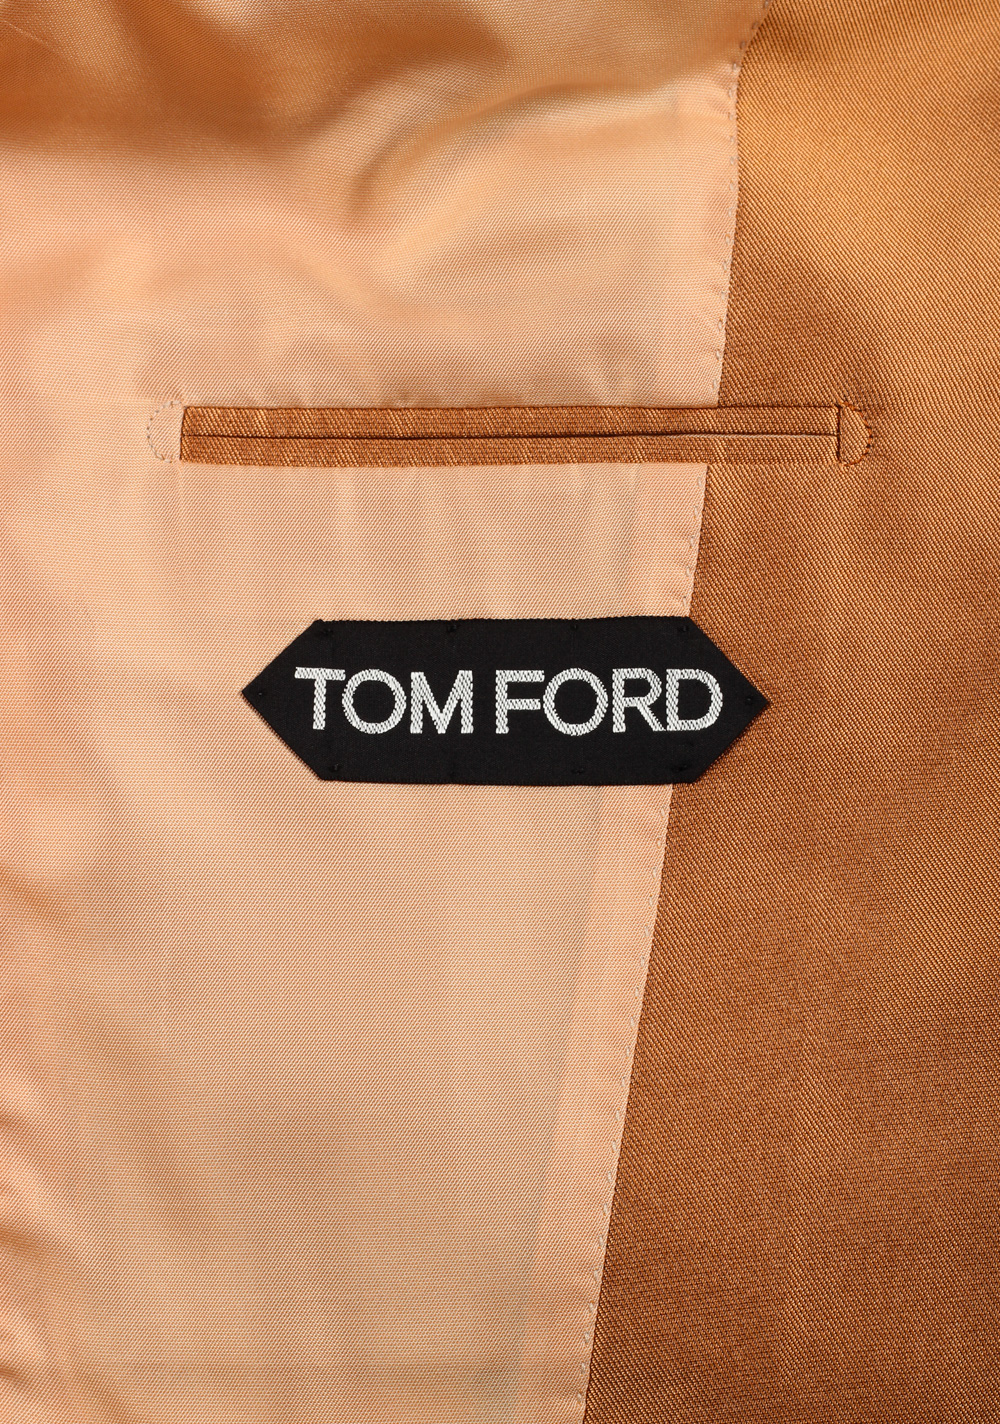 TOM FORD Atticus Silk Copper Sport Coat Size 46 / 36R U.S. | Costume Limité